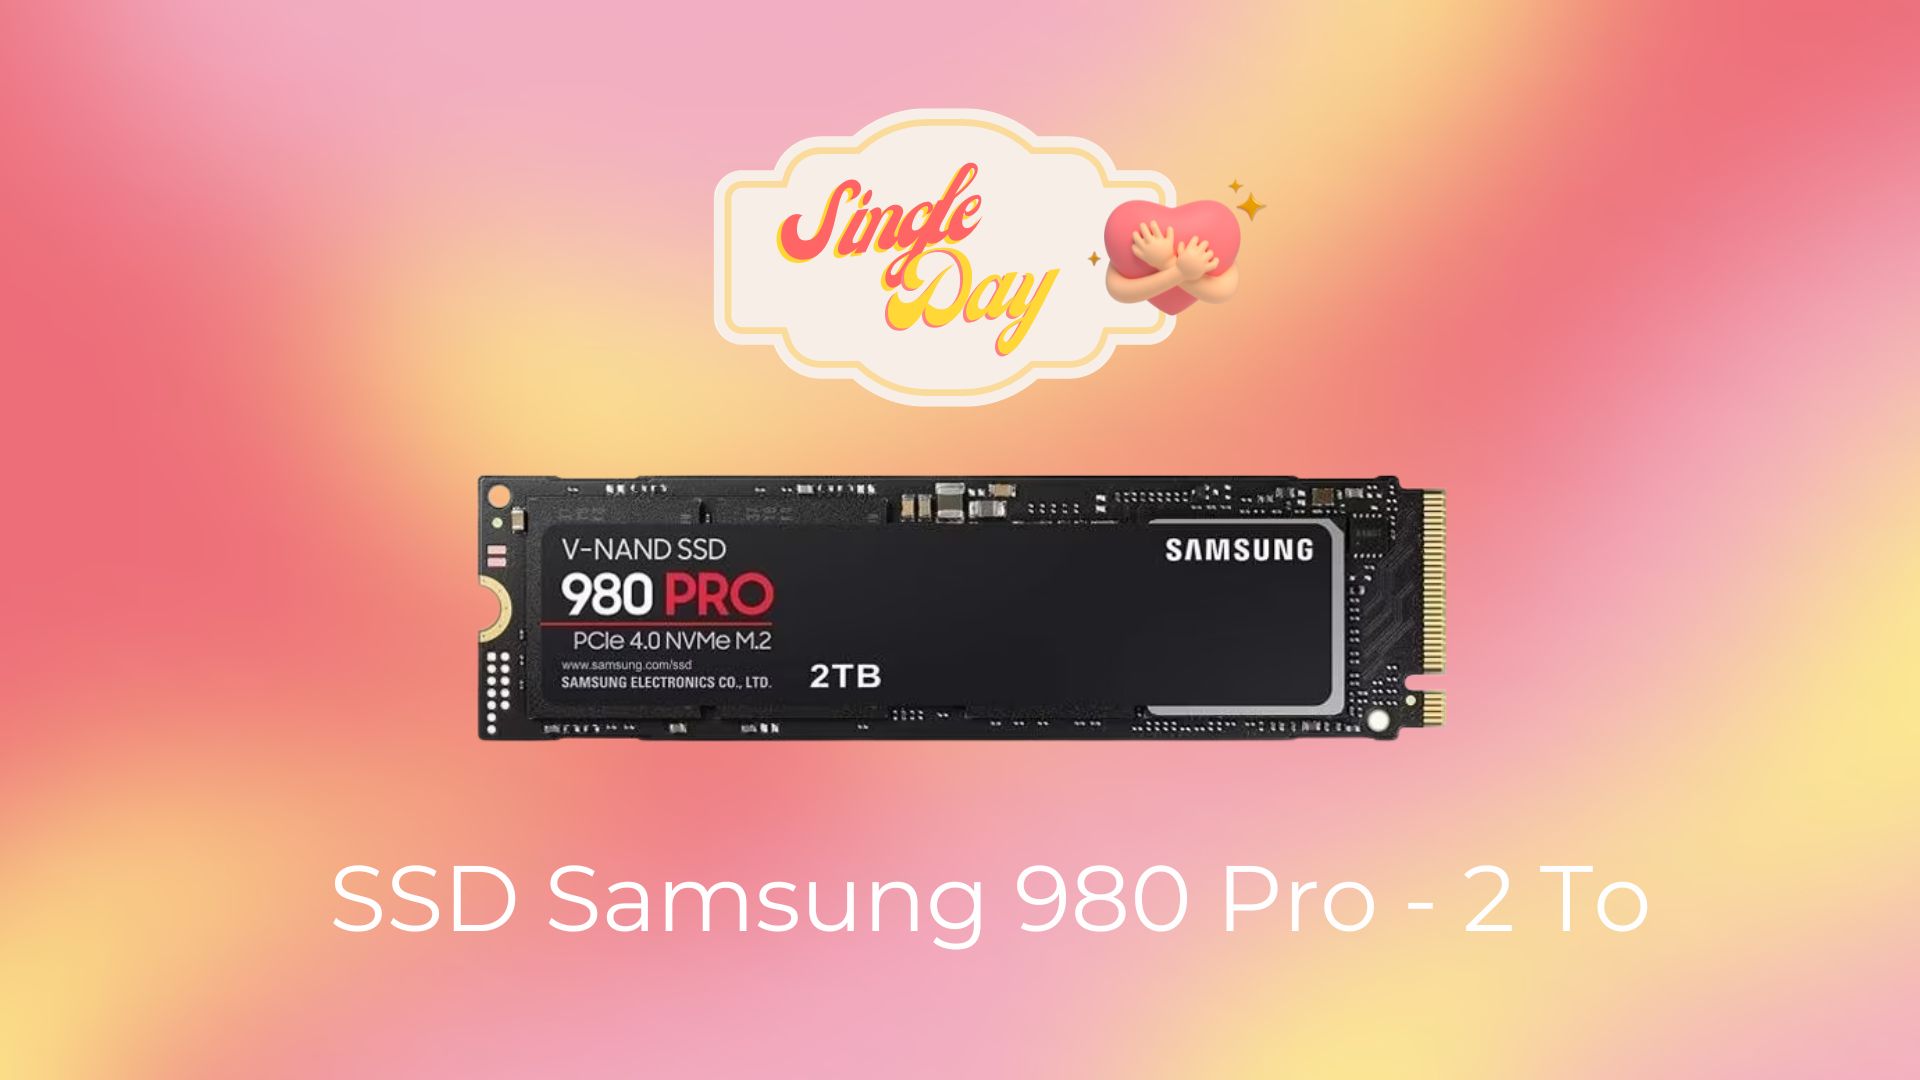 Le SSD Samsung 980 Pro 2 To est le super deal du Single Day pour